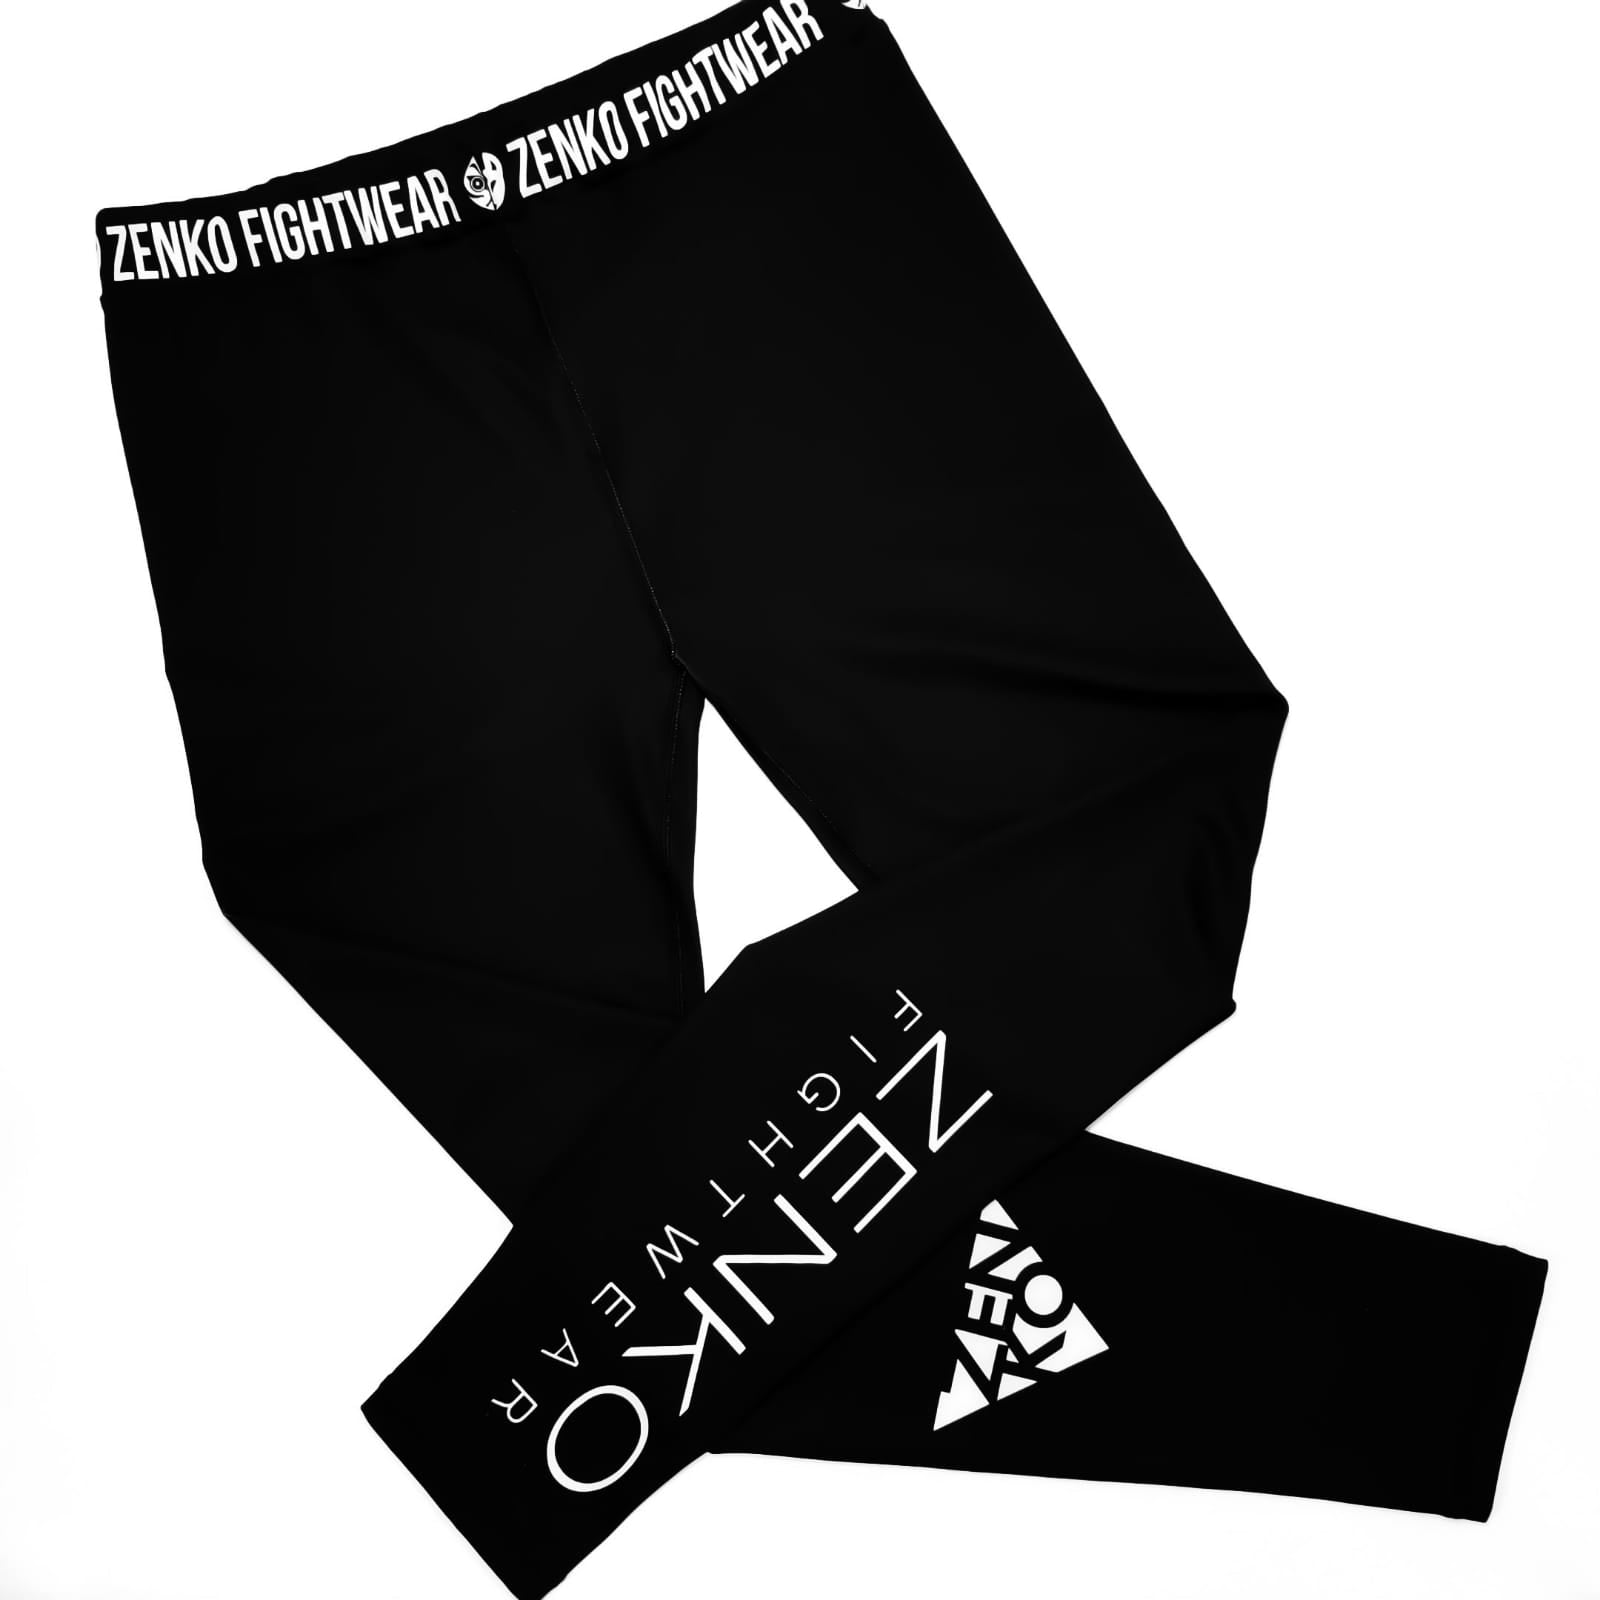 Zenko Fightwear Black Logo Spats